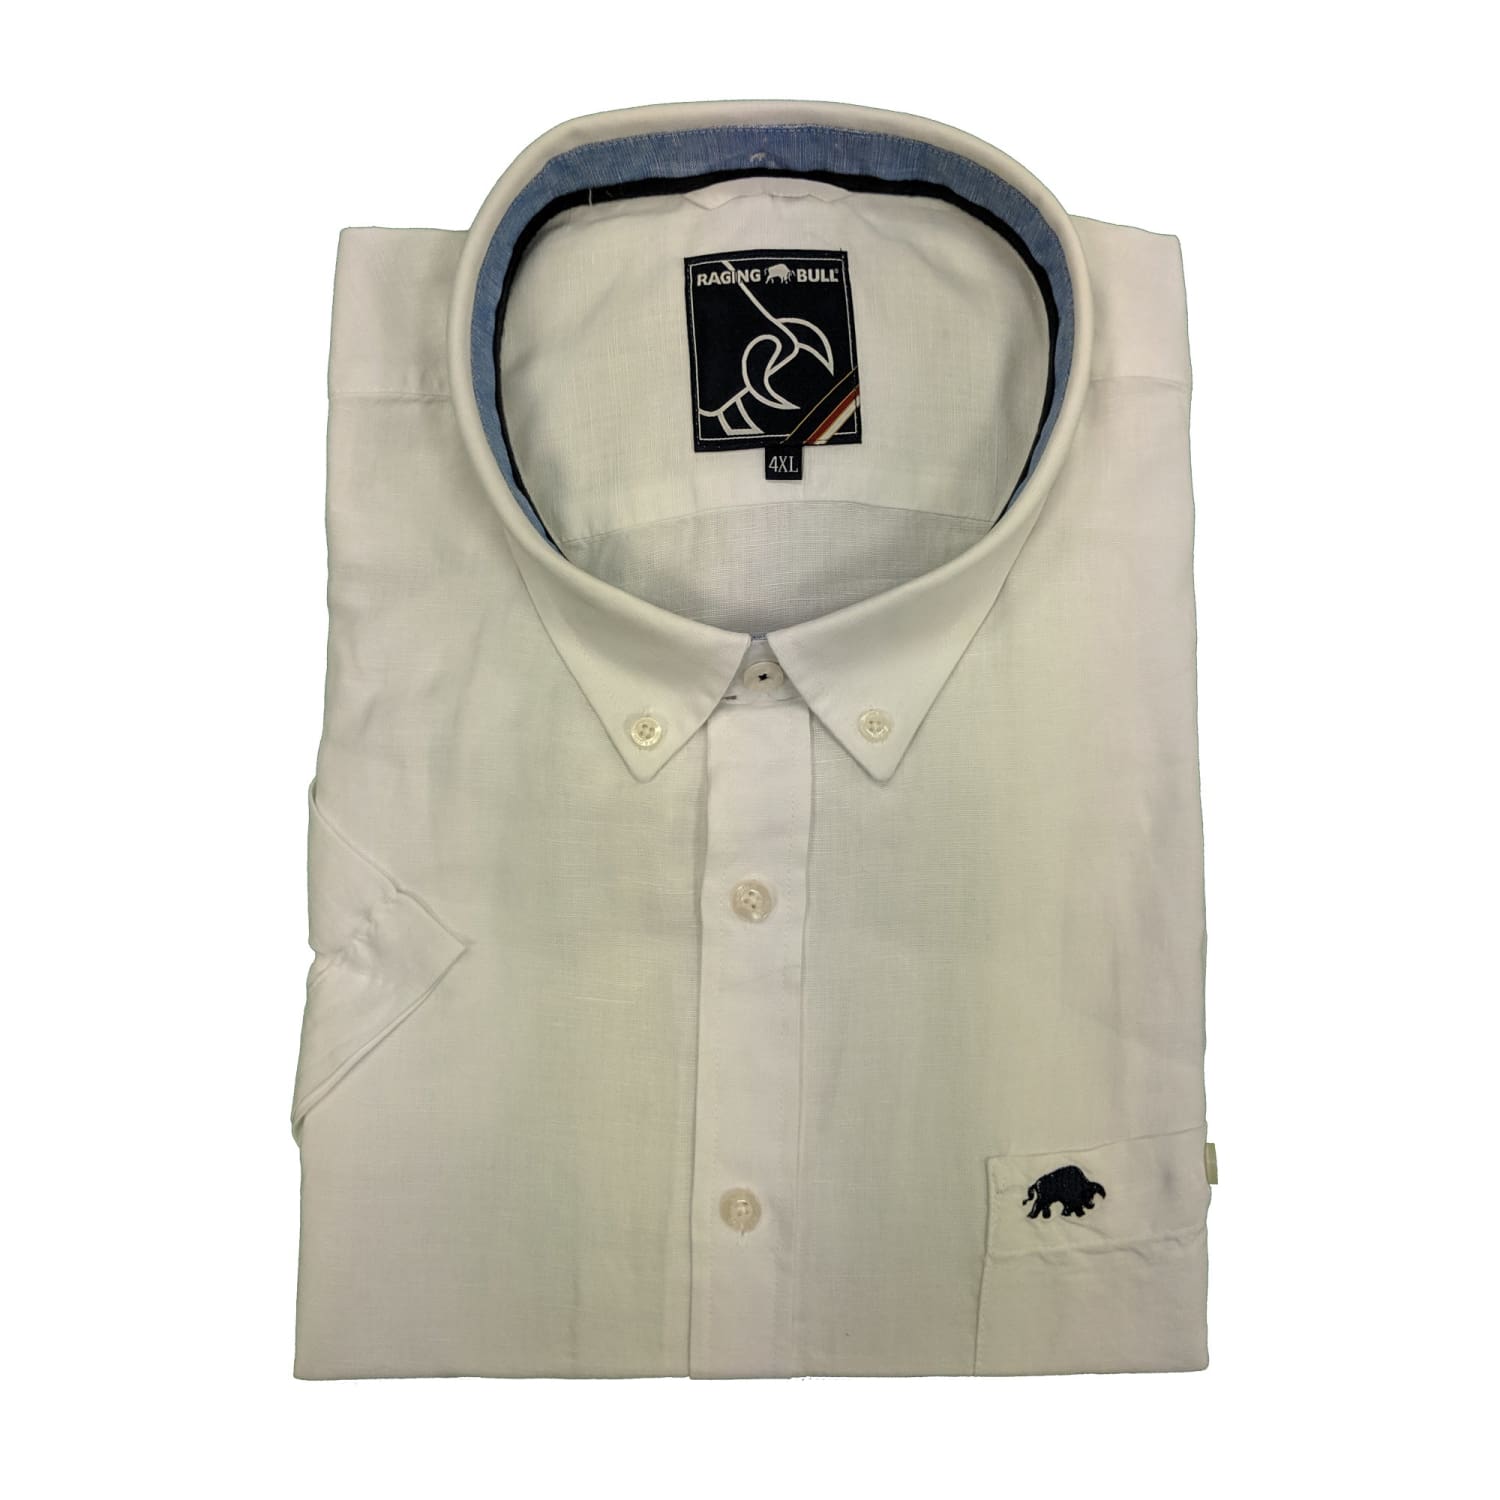 Raging Bull S/S Plain Linen Shirt - S1454 - White 1